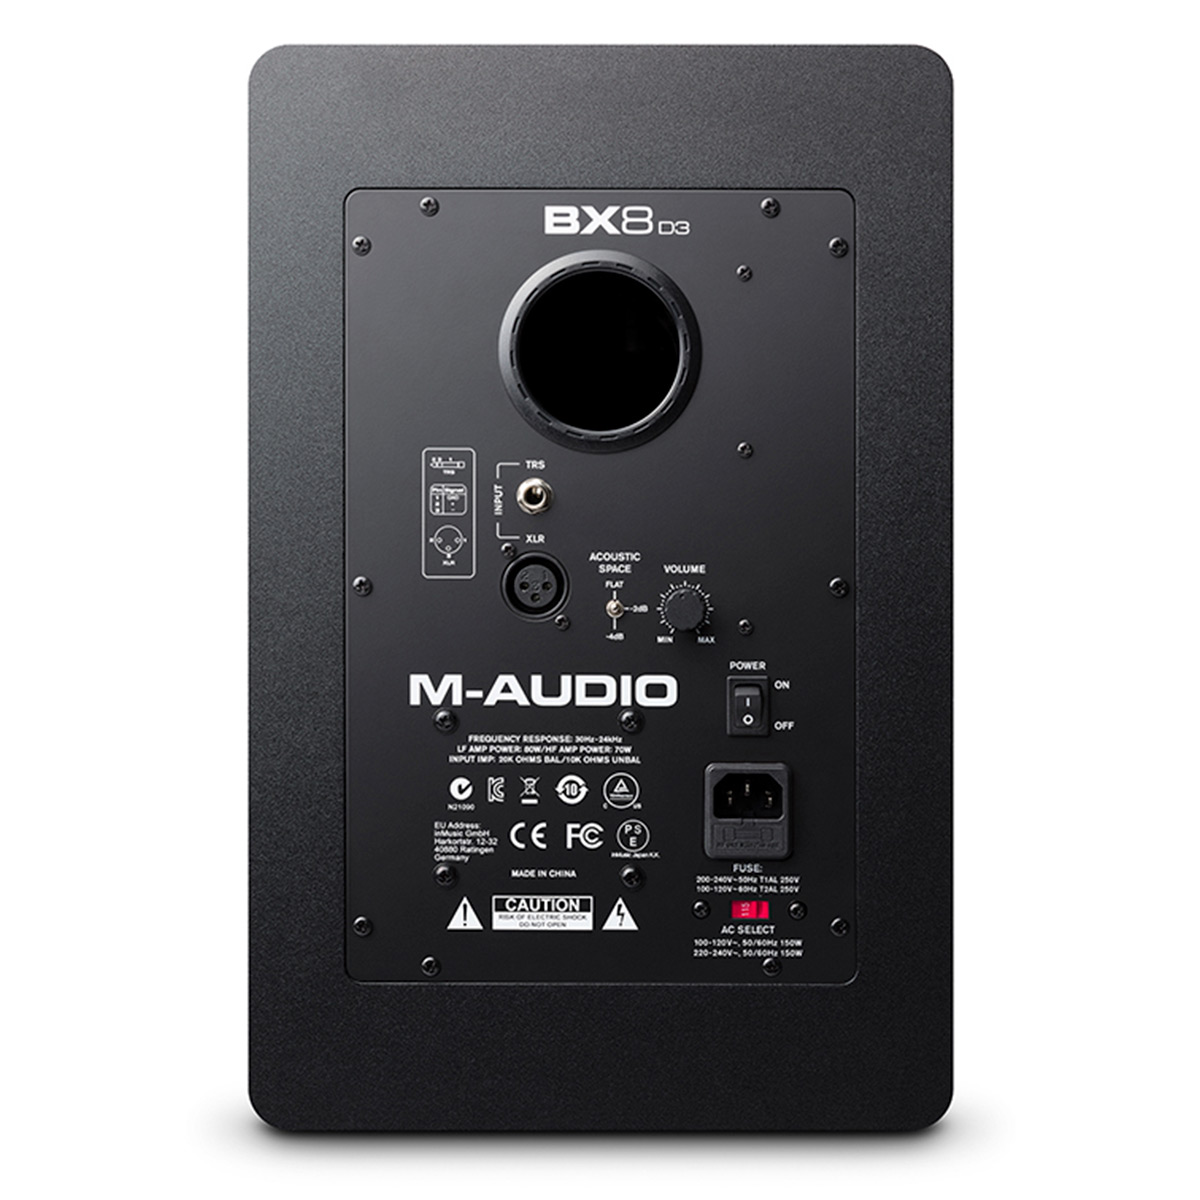 Картинка Студийный монитор M-Audio BX8 D3 - лучшая цена, доставка по России. Фото N3